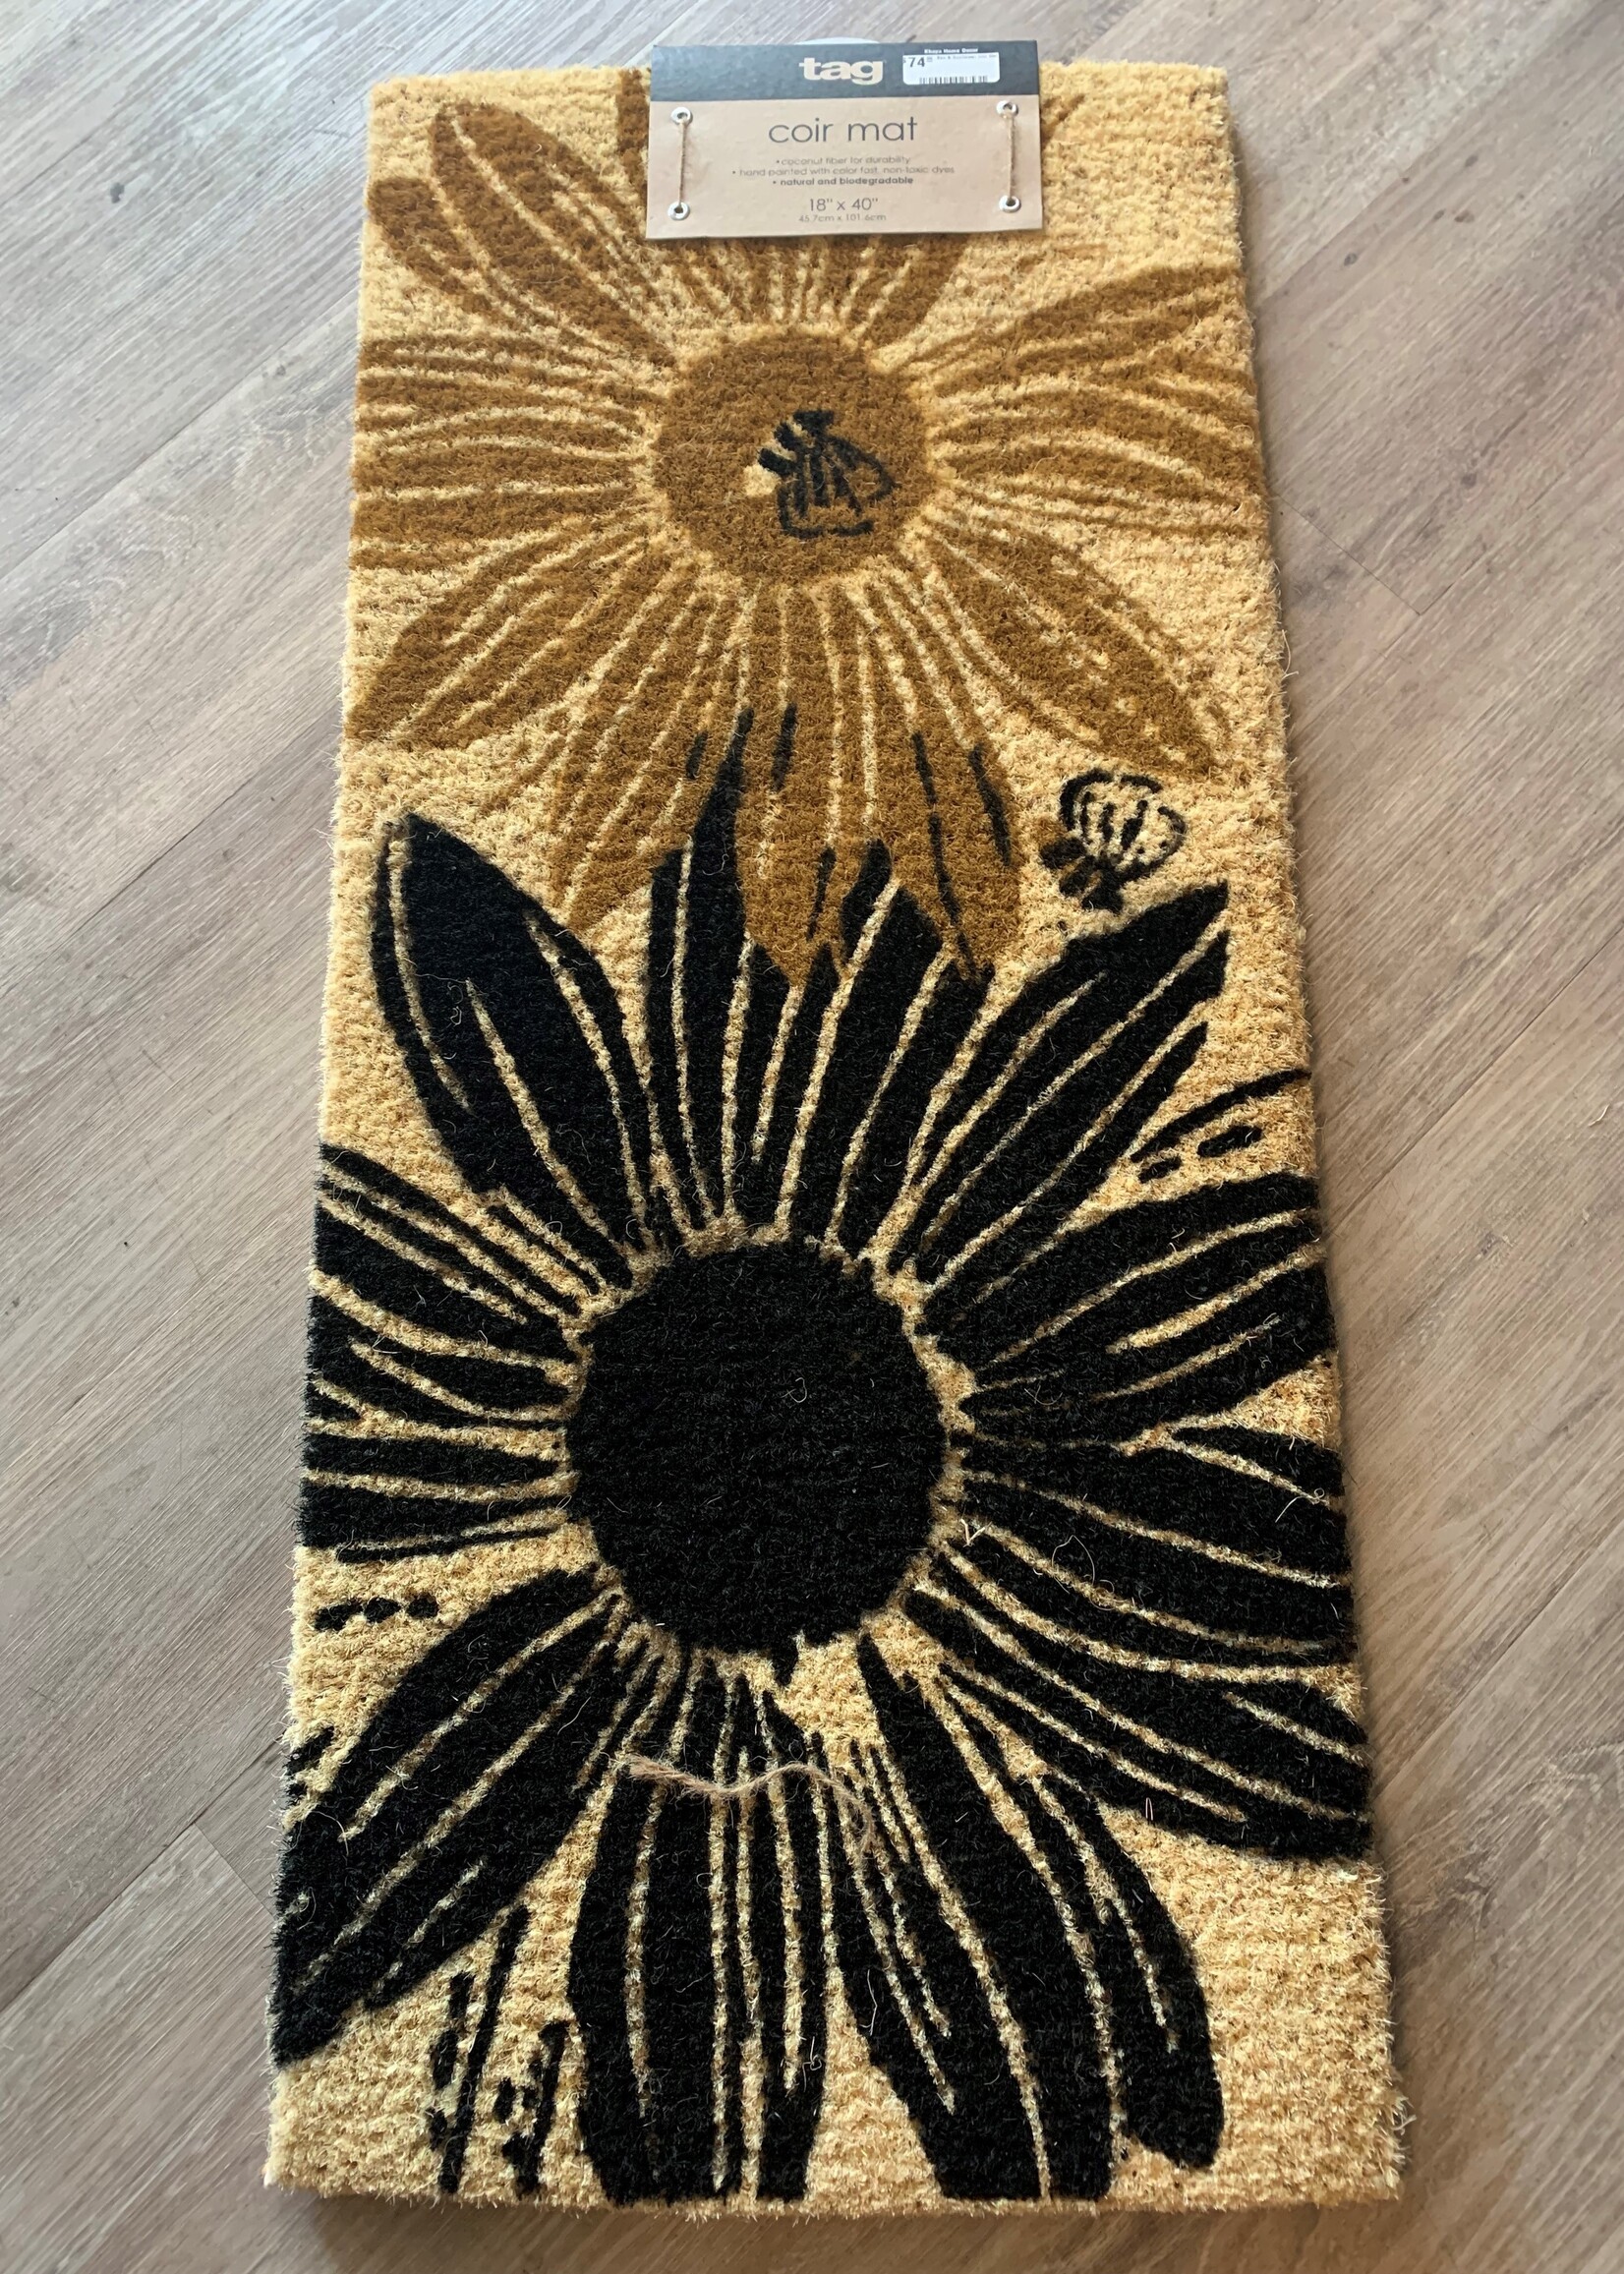 Tag Bee & Sunflower Coir Mat